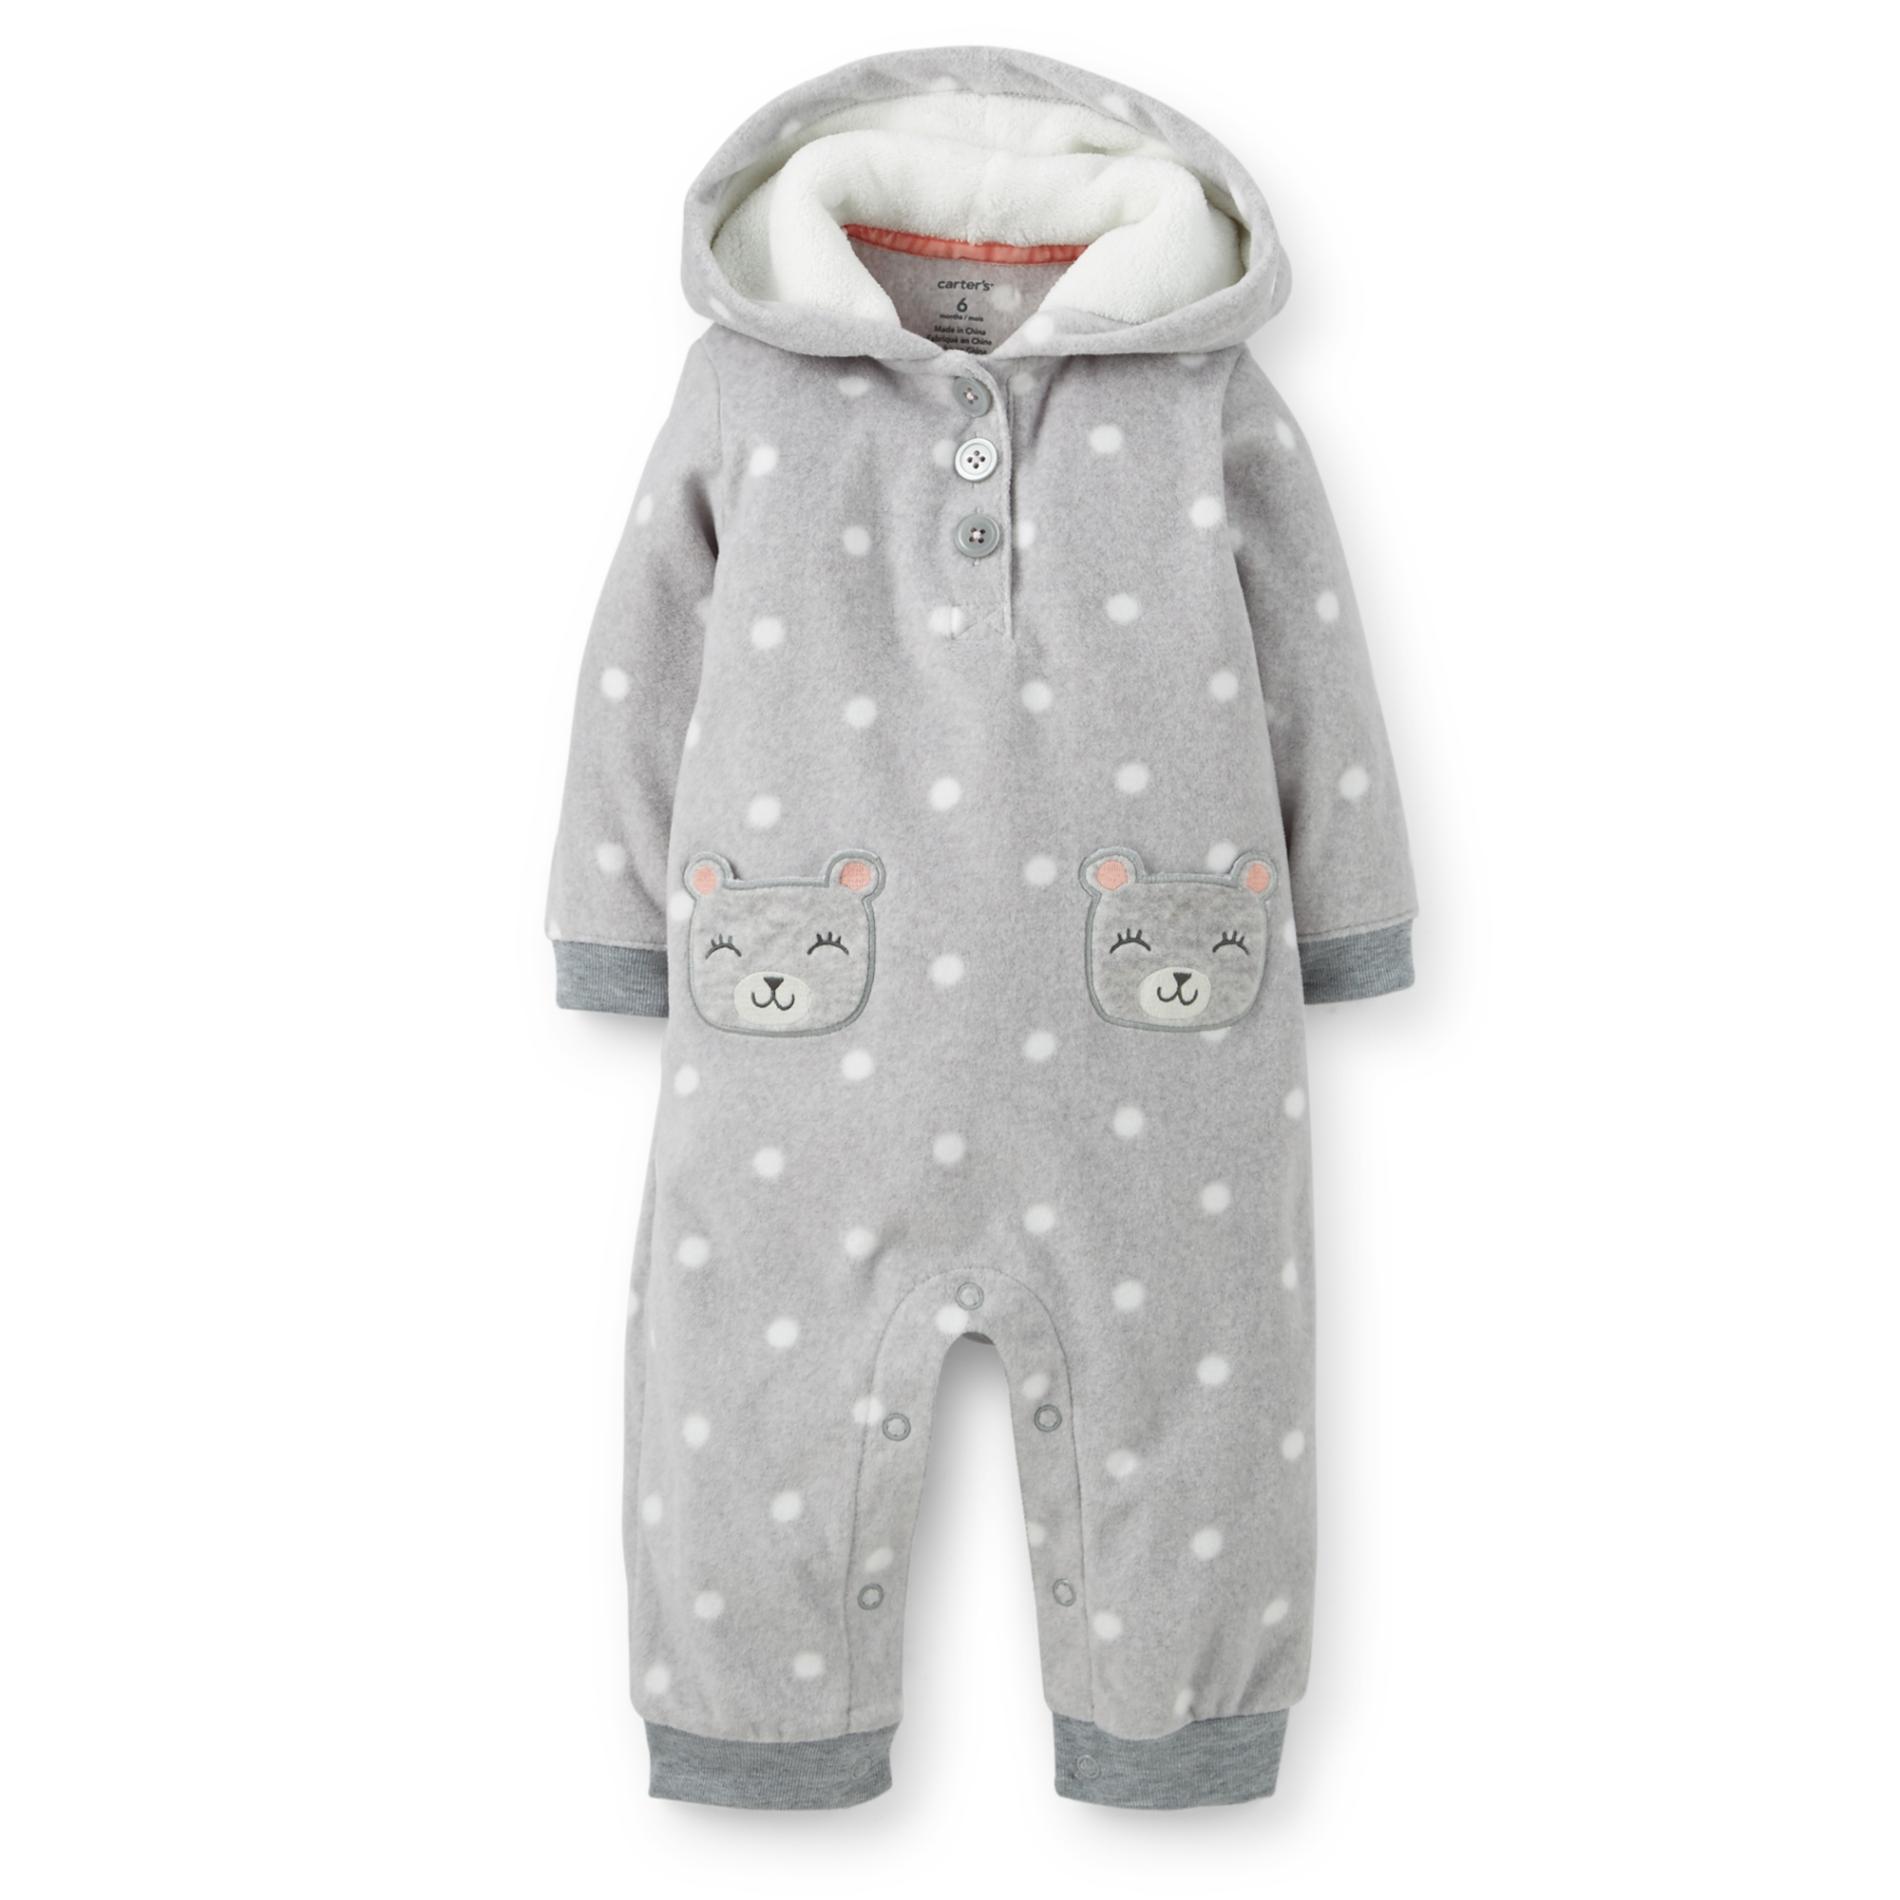 Carter's Newborn & Infant Girl's Hooded Microfleece Bodysuit - Dot